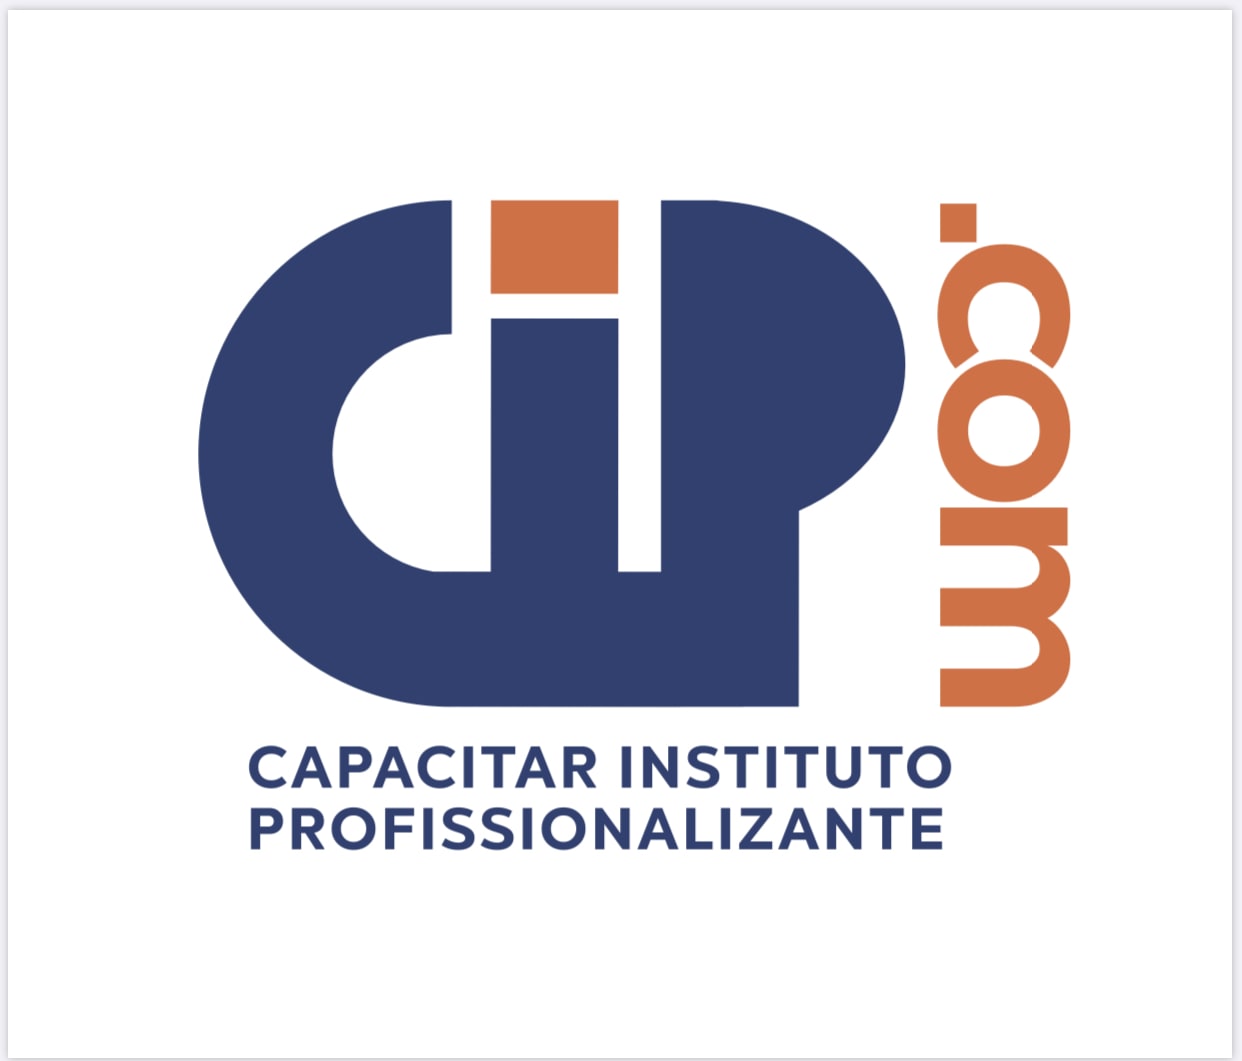 CIP - Capacitar Instituto Profissionalizante